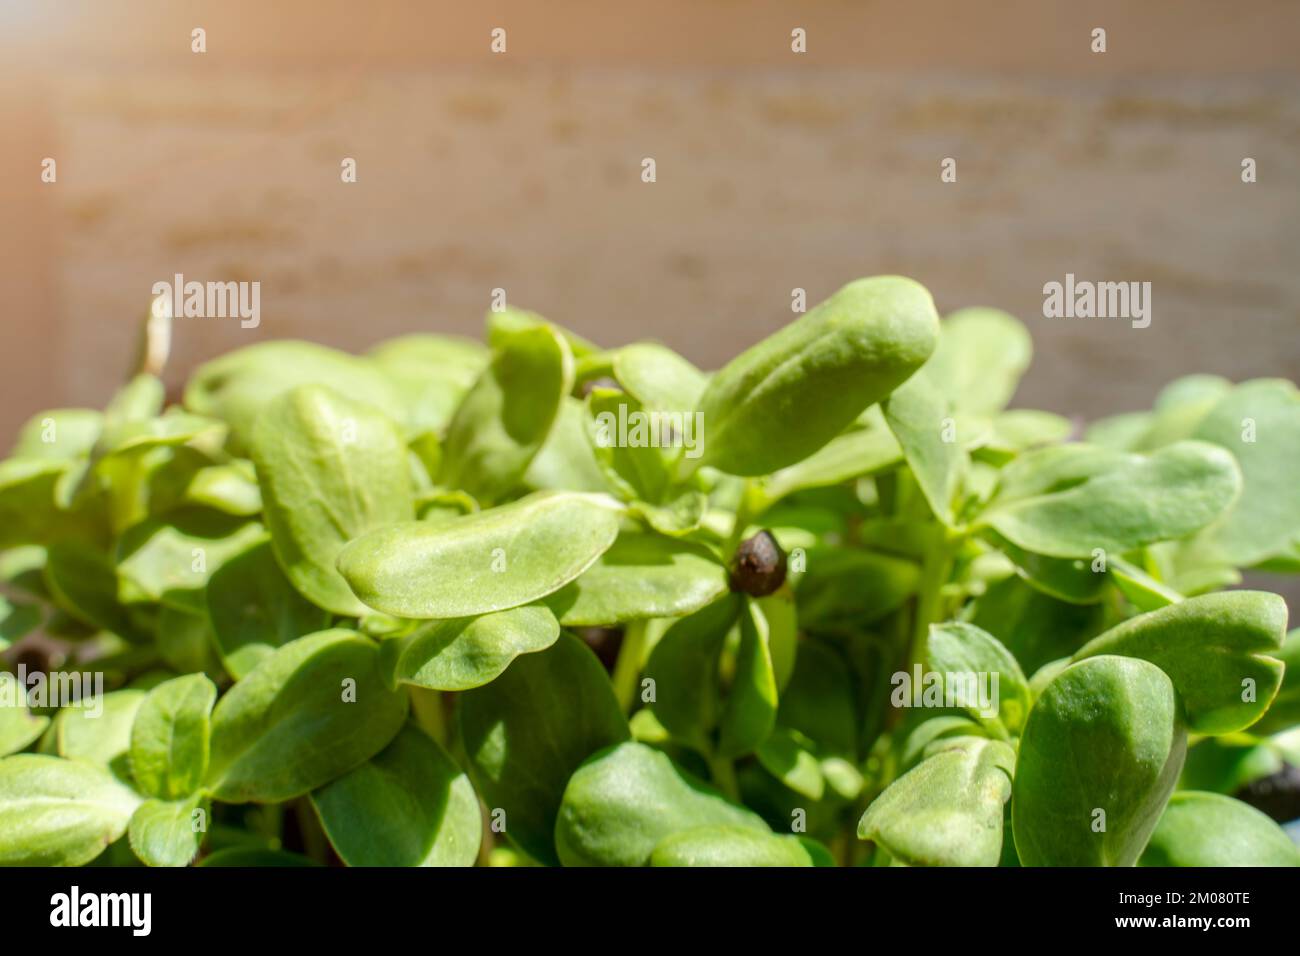 Vegane Mikroschüsse aus Sonnenblumengrün. Ein wachsendes Konzept der gesunden Ernährung. Gekeimte Sonnenblumenkerne, mikrogrün, minimalistisches Design Stockfoto